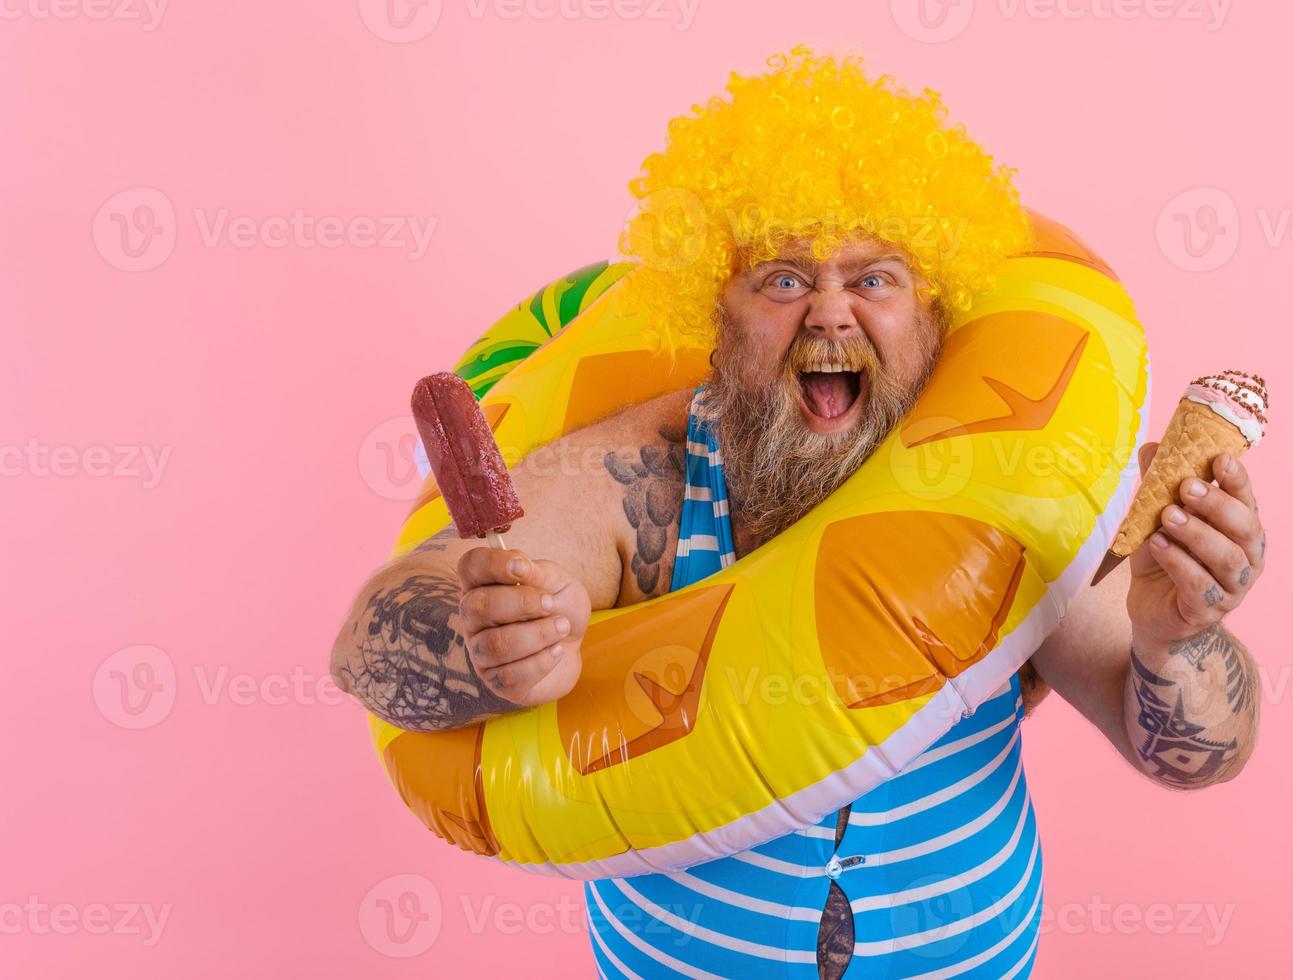 Fett Mann mit Bart und Perücke isst ein Eis am Stiel und ein Eis foto